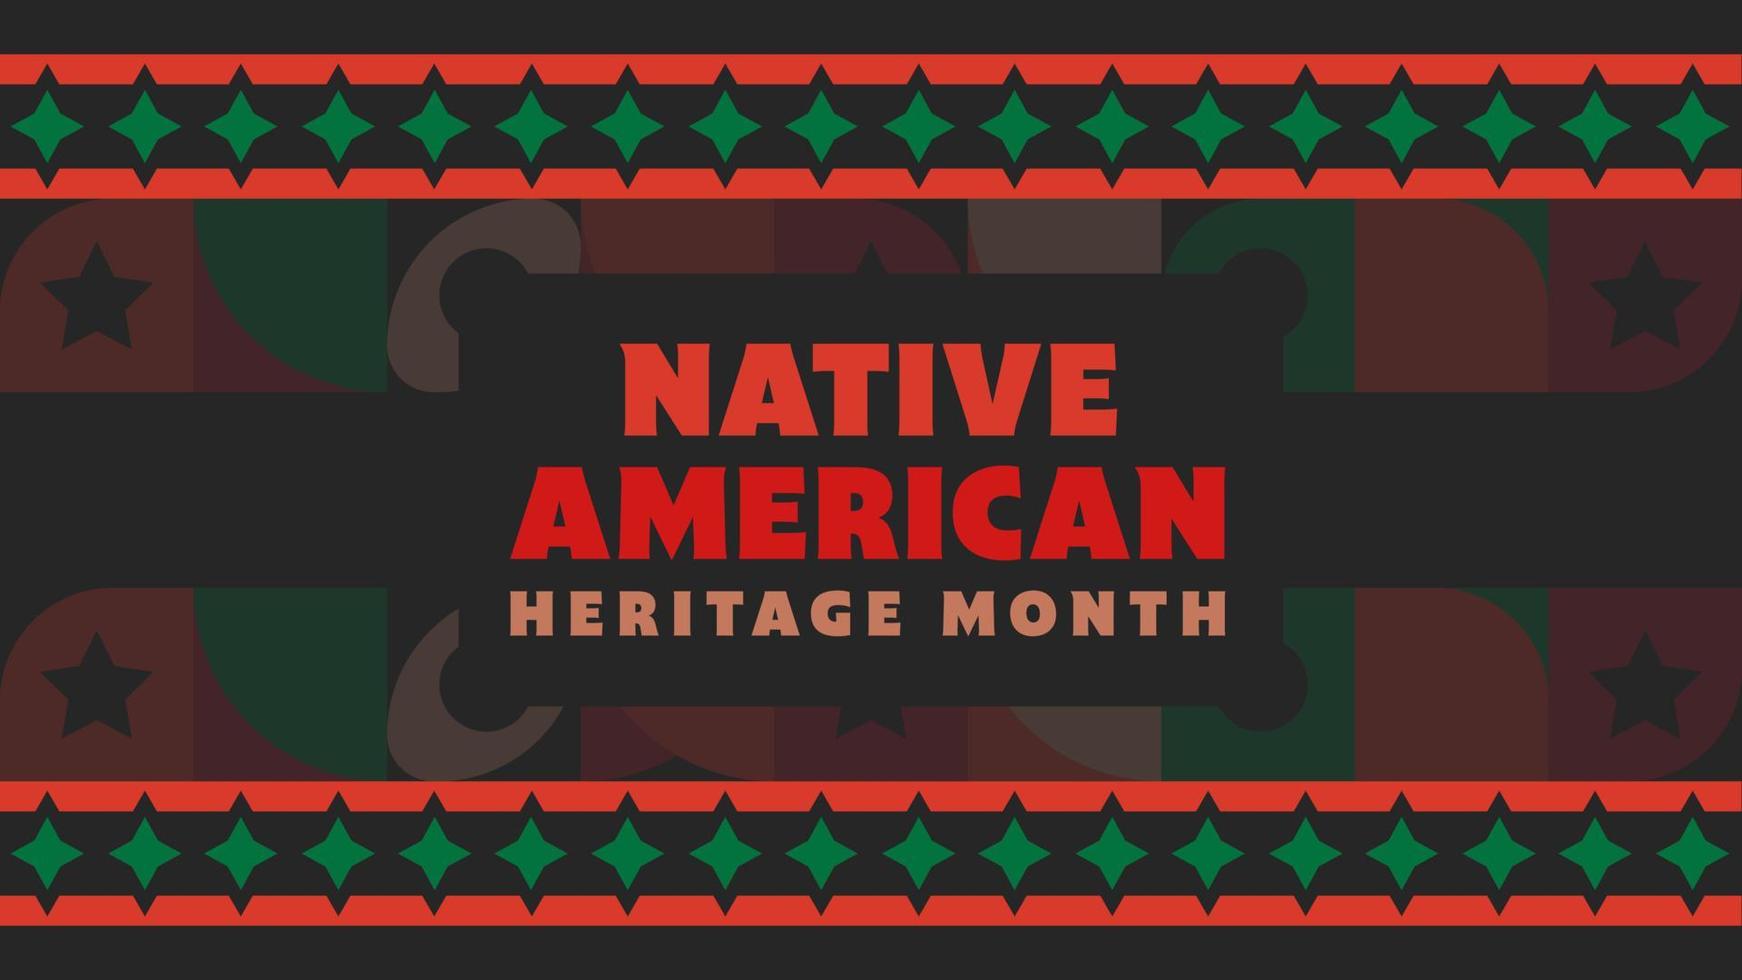 mois du patrimoine amérindien. conception de fond avec des ornements abstraits célébrant les indiens indigènes en amérique. vecteur